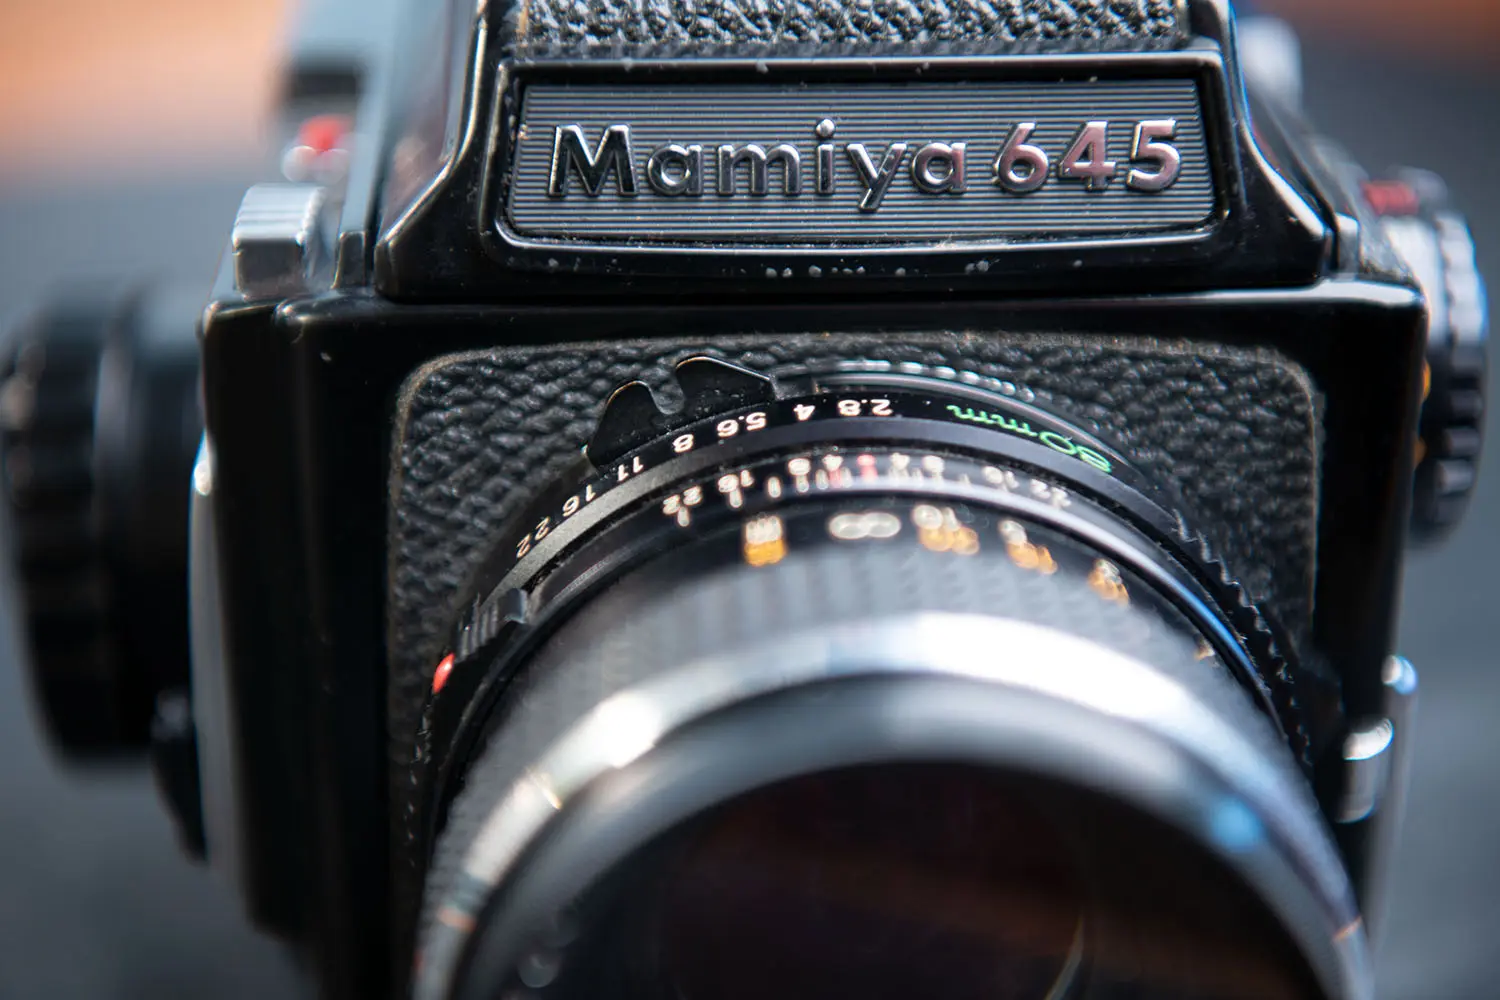 Mamiya 645 - historische Kamera aus den frühen 80er Jahren